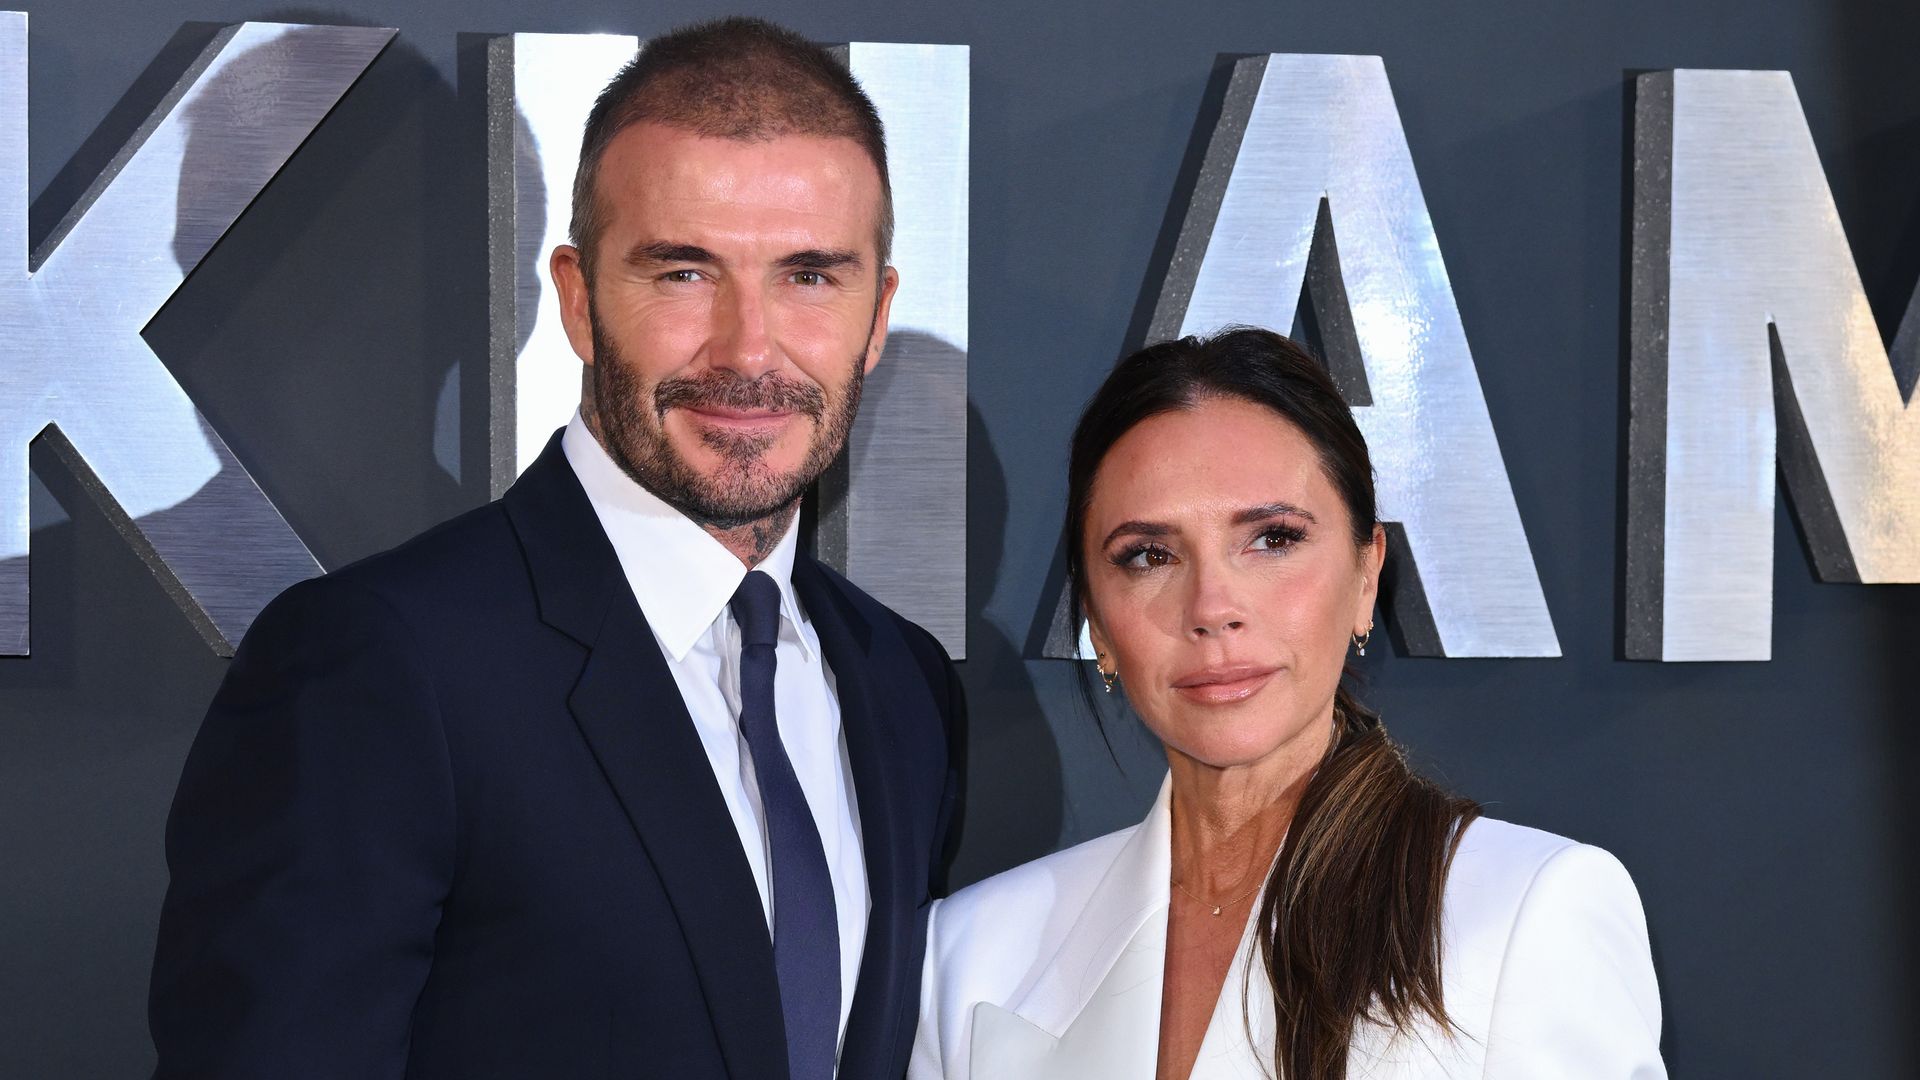 Victoria Beckham scolds David Beckham over Photoshop fail